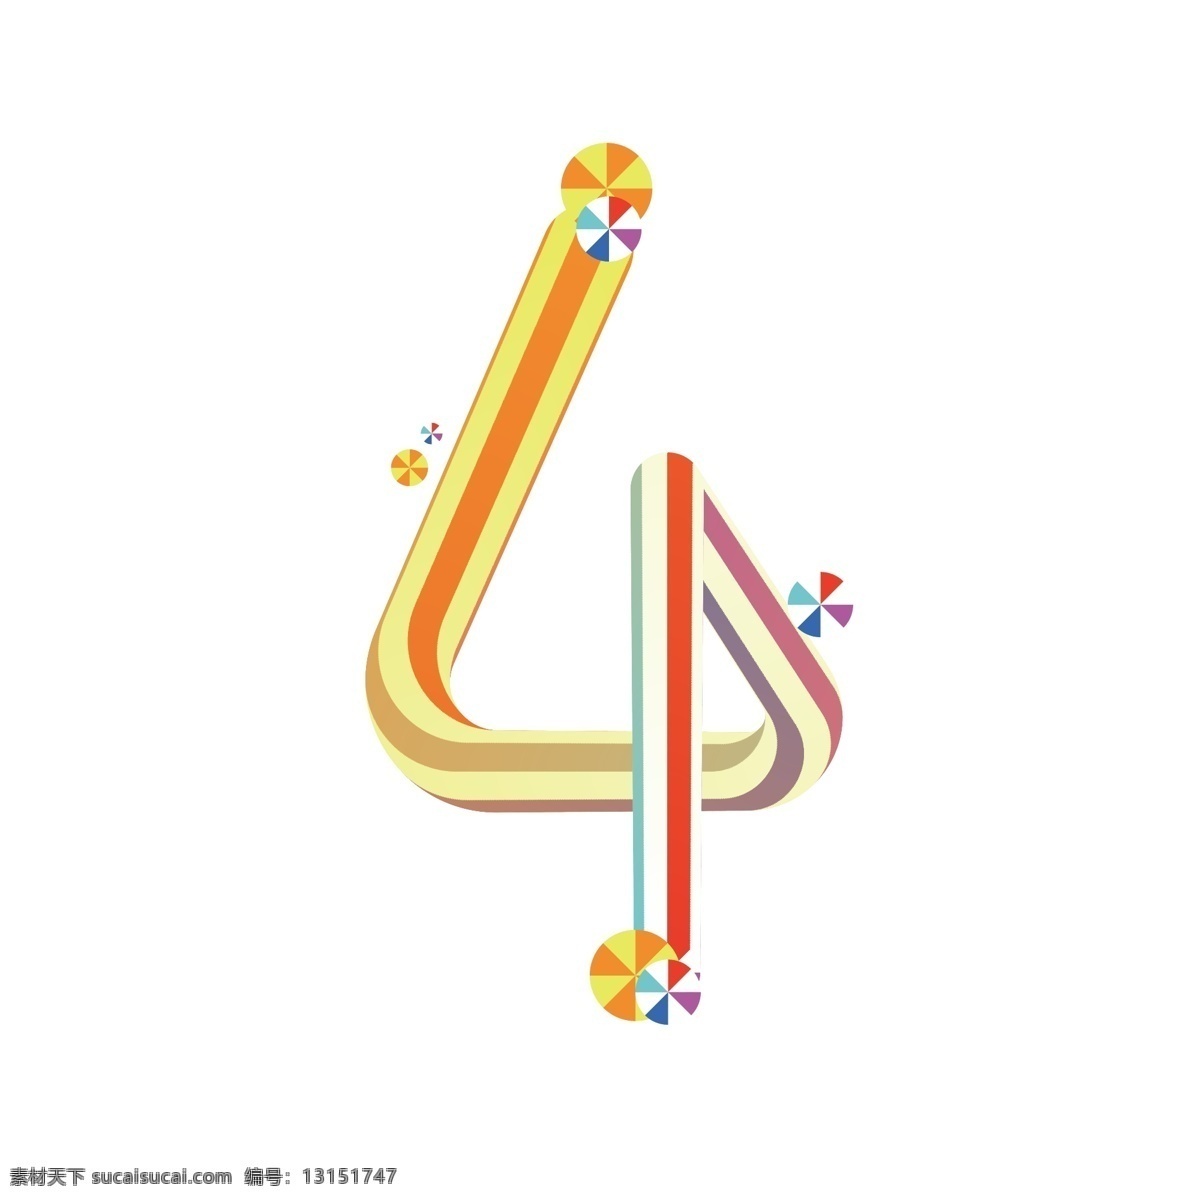 双十 倒计时 数字4 糖果字 字体设计 创意设计 彩虹字